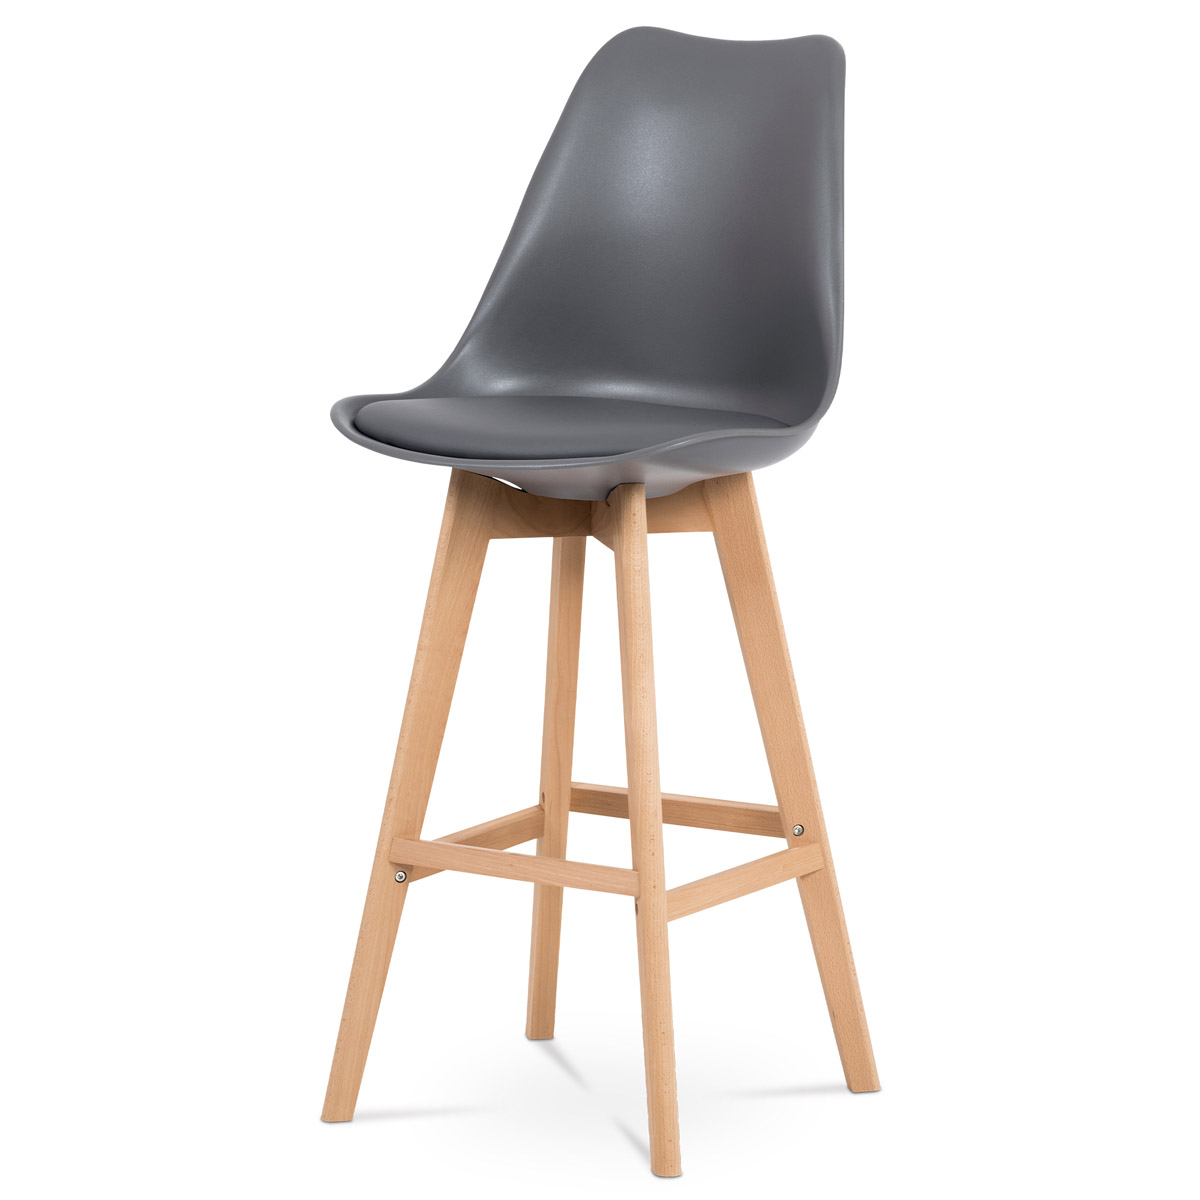 Barová židle, šedá plast+ekokůže, nohy masiv buk